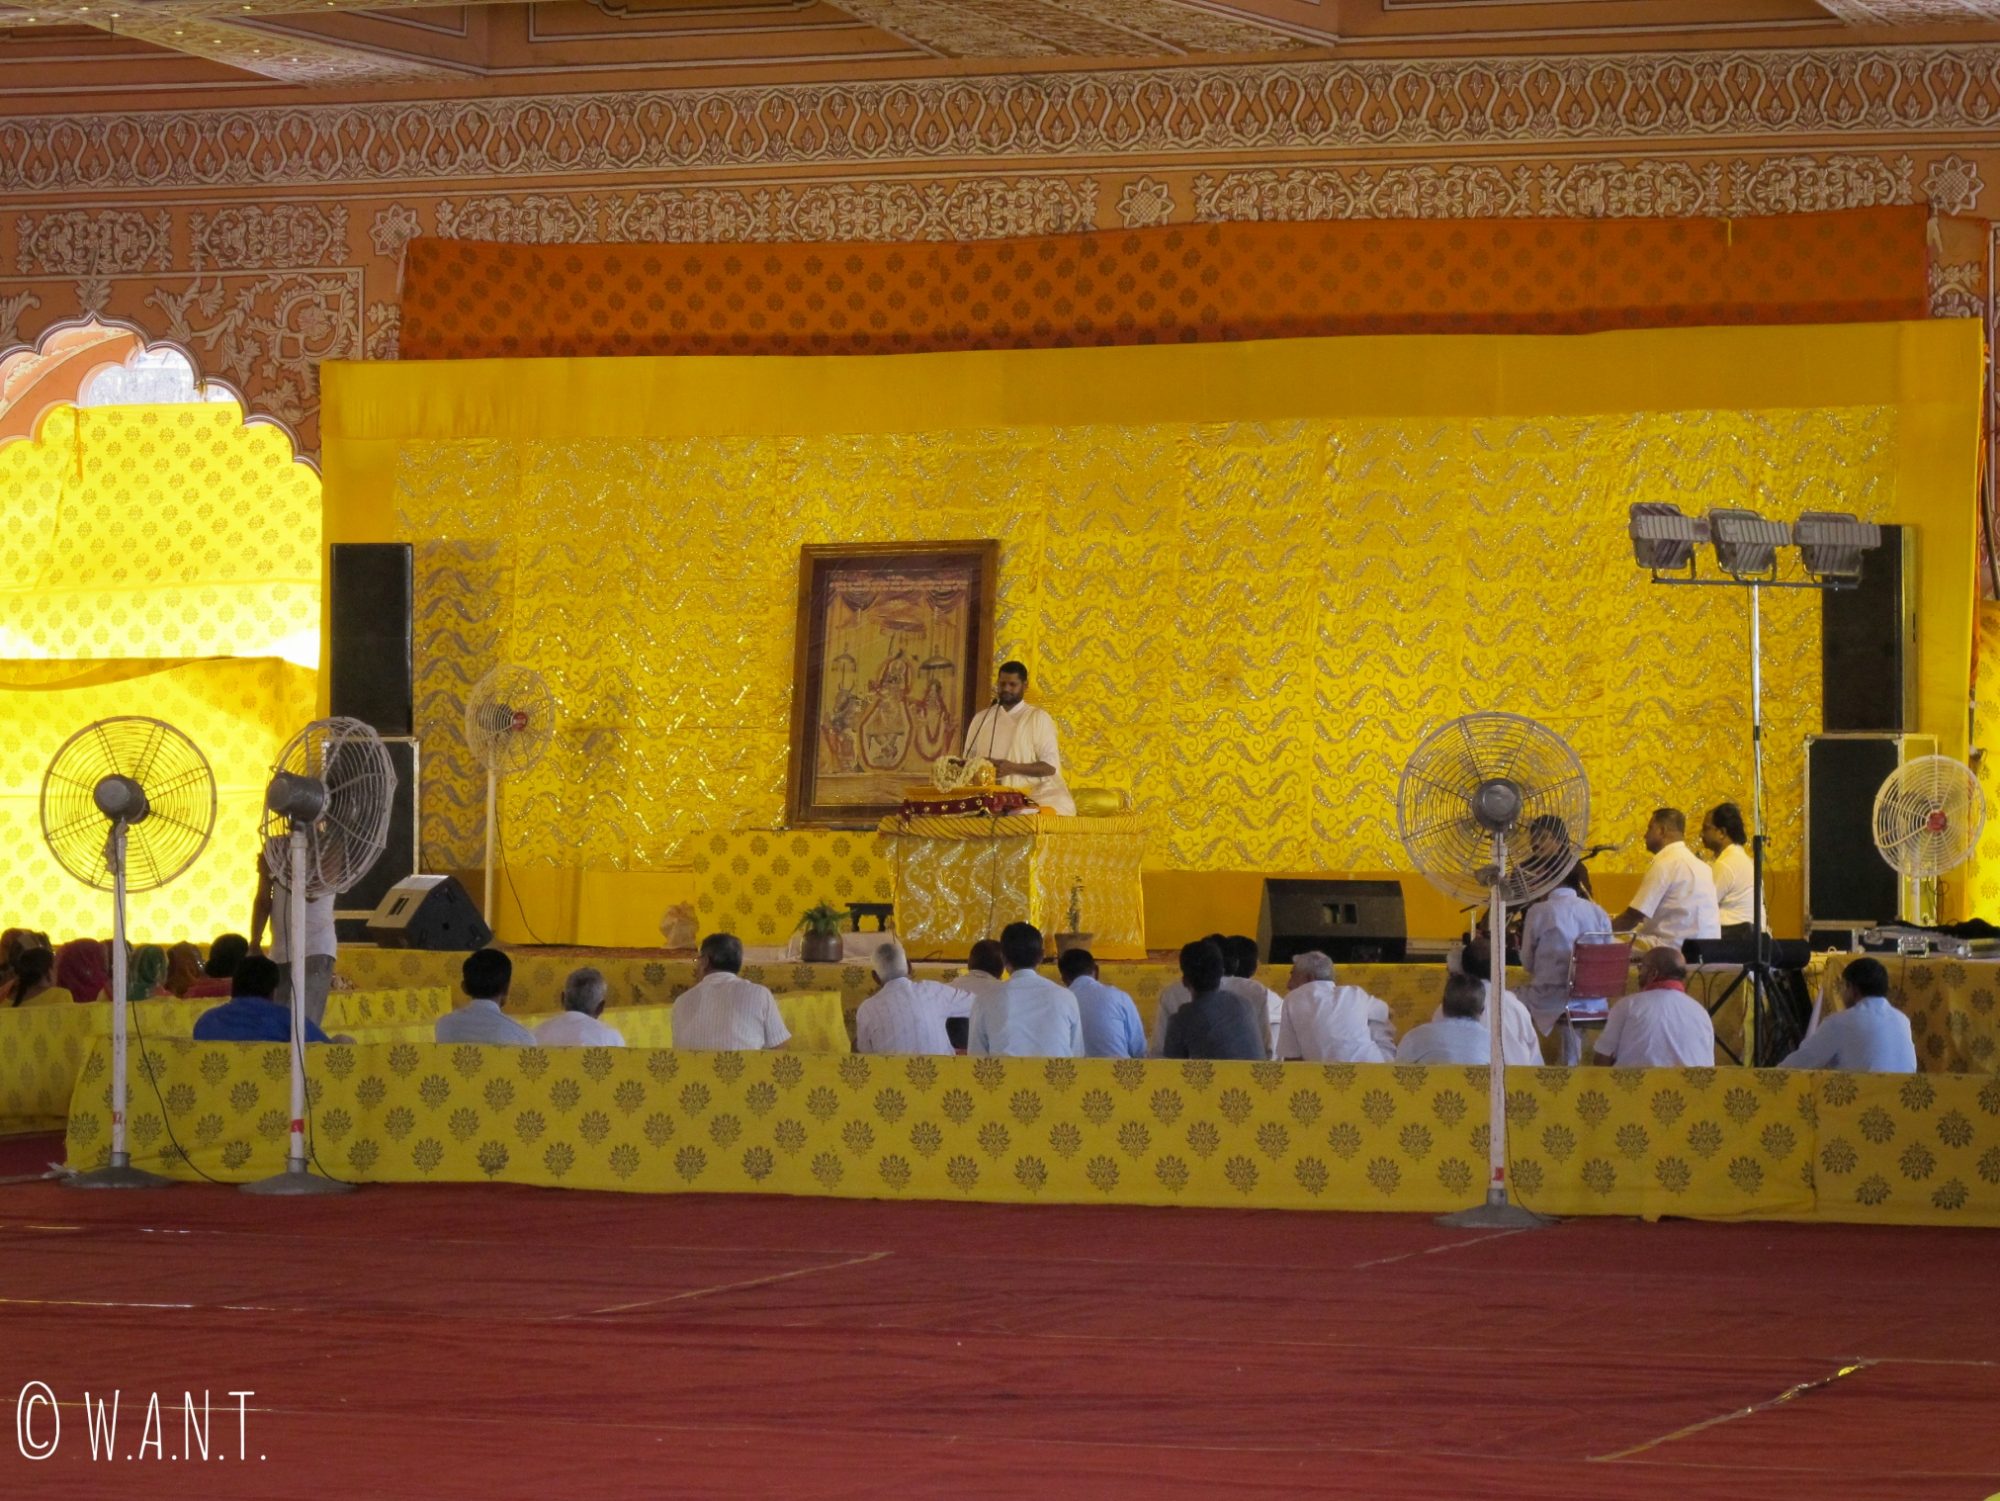 Cérémonie hindou en cours au temple Govind Devji à Jaipur